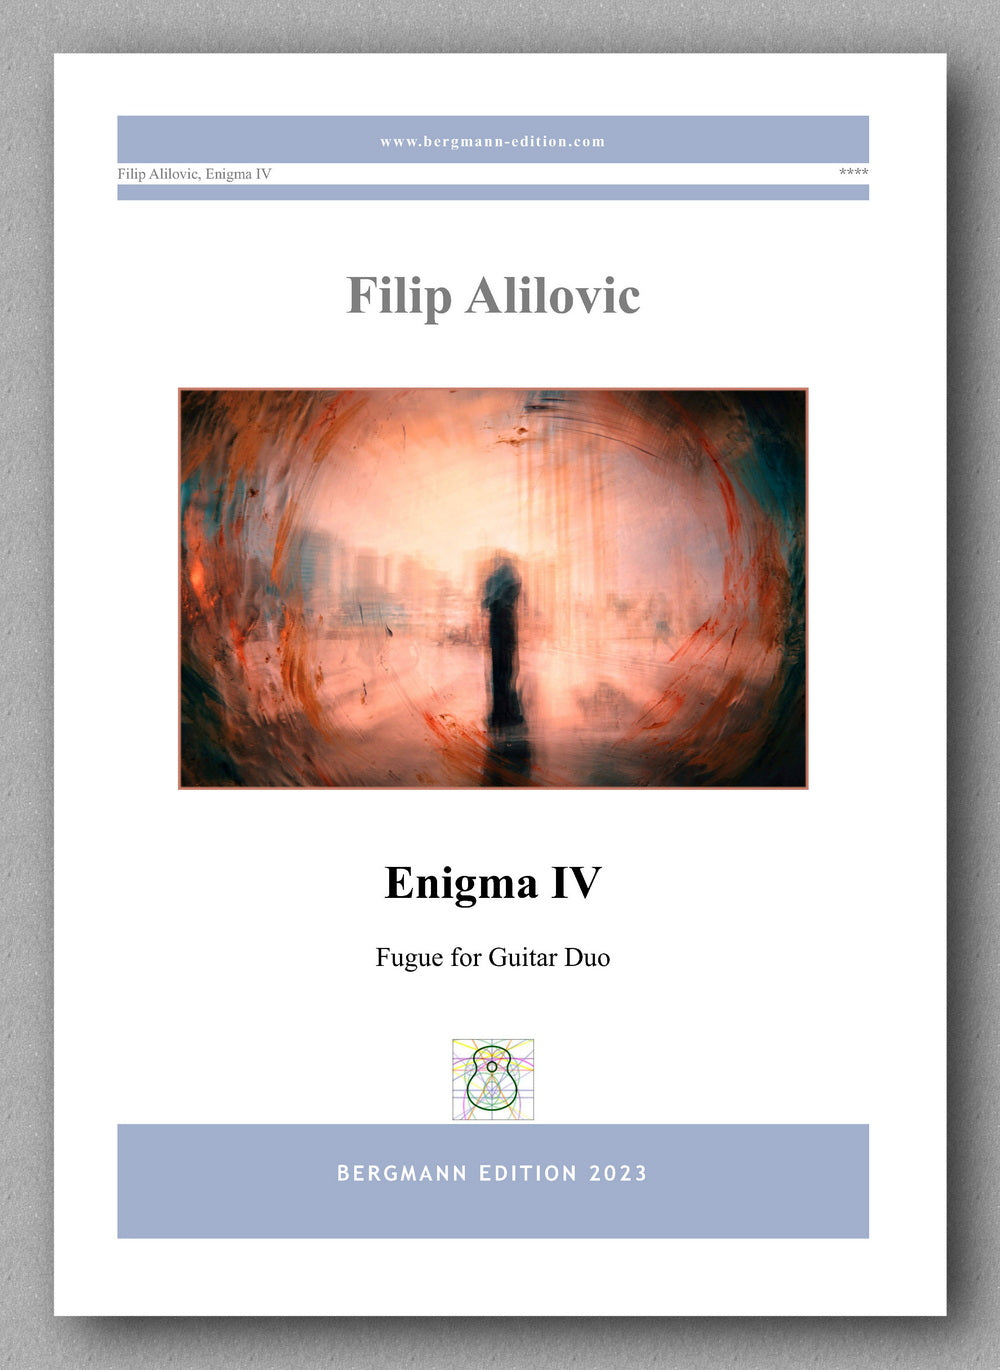 Filip Alilovic, Enigma IV - preview of the cover